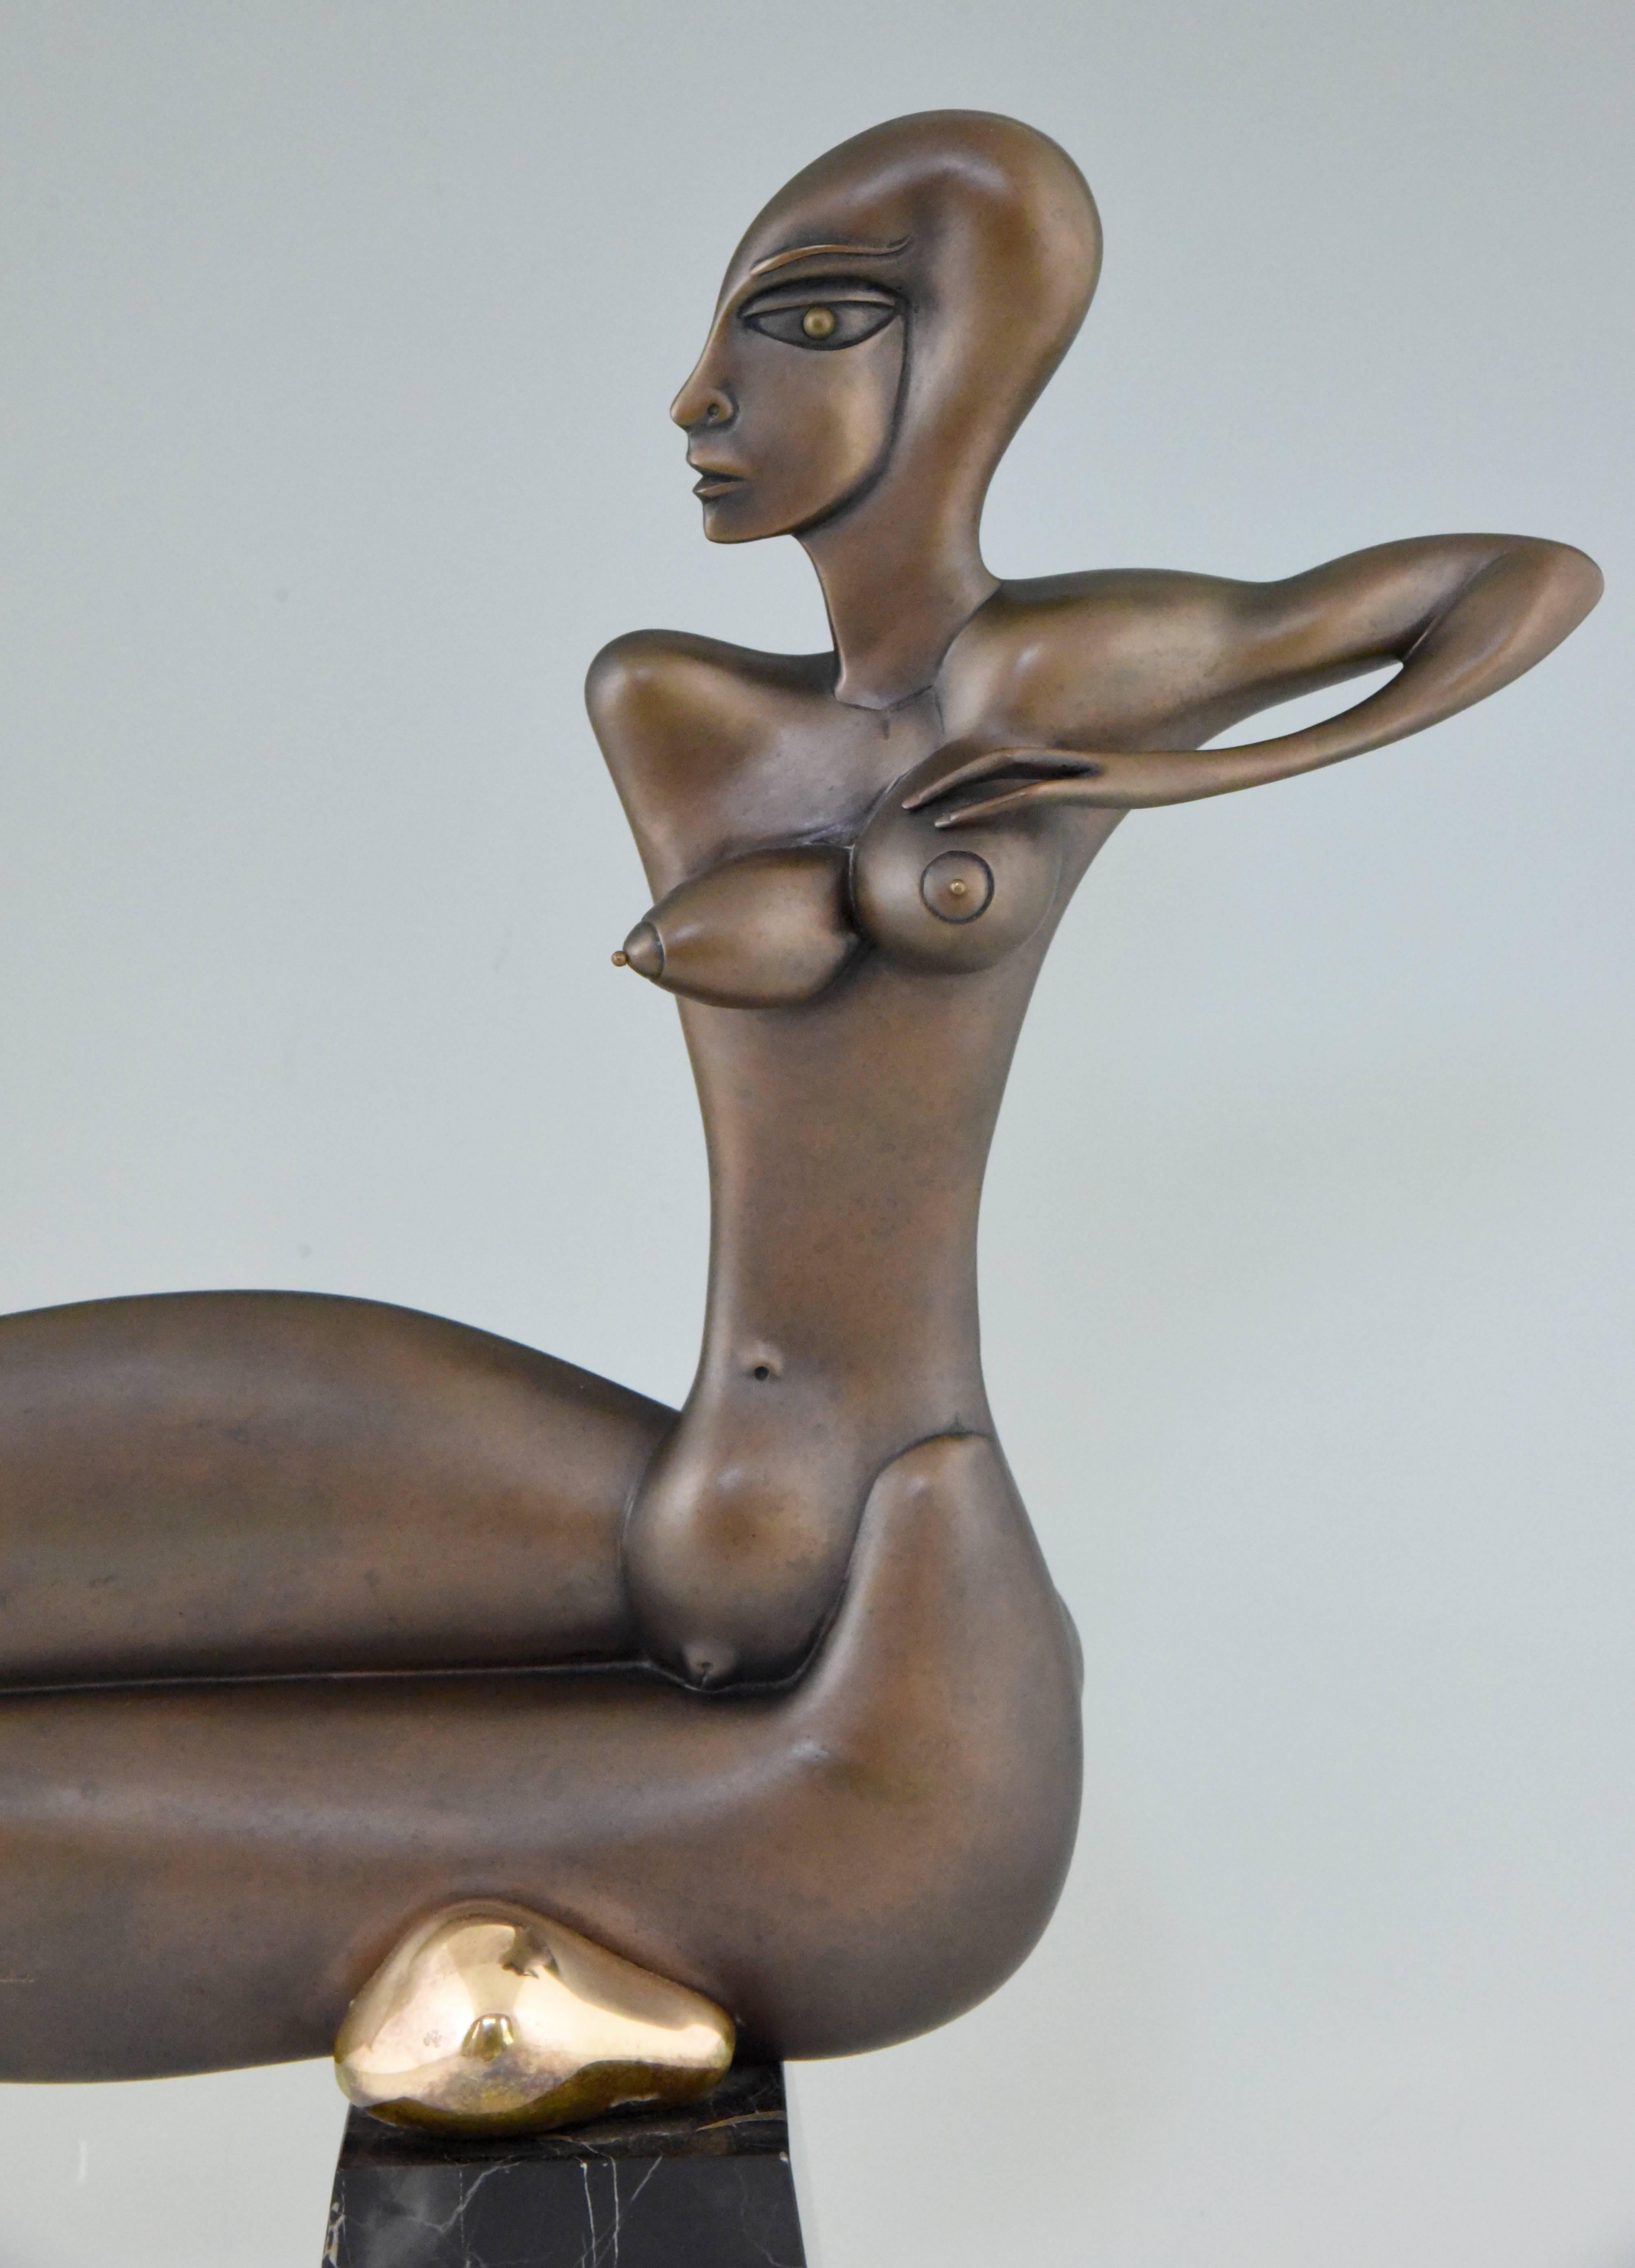 paul wunderlich bronze sculpture